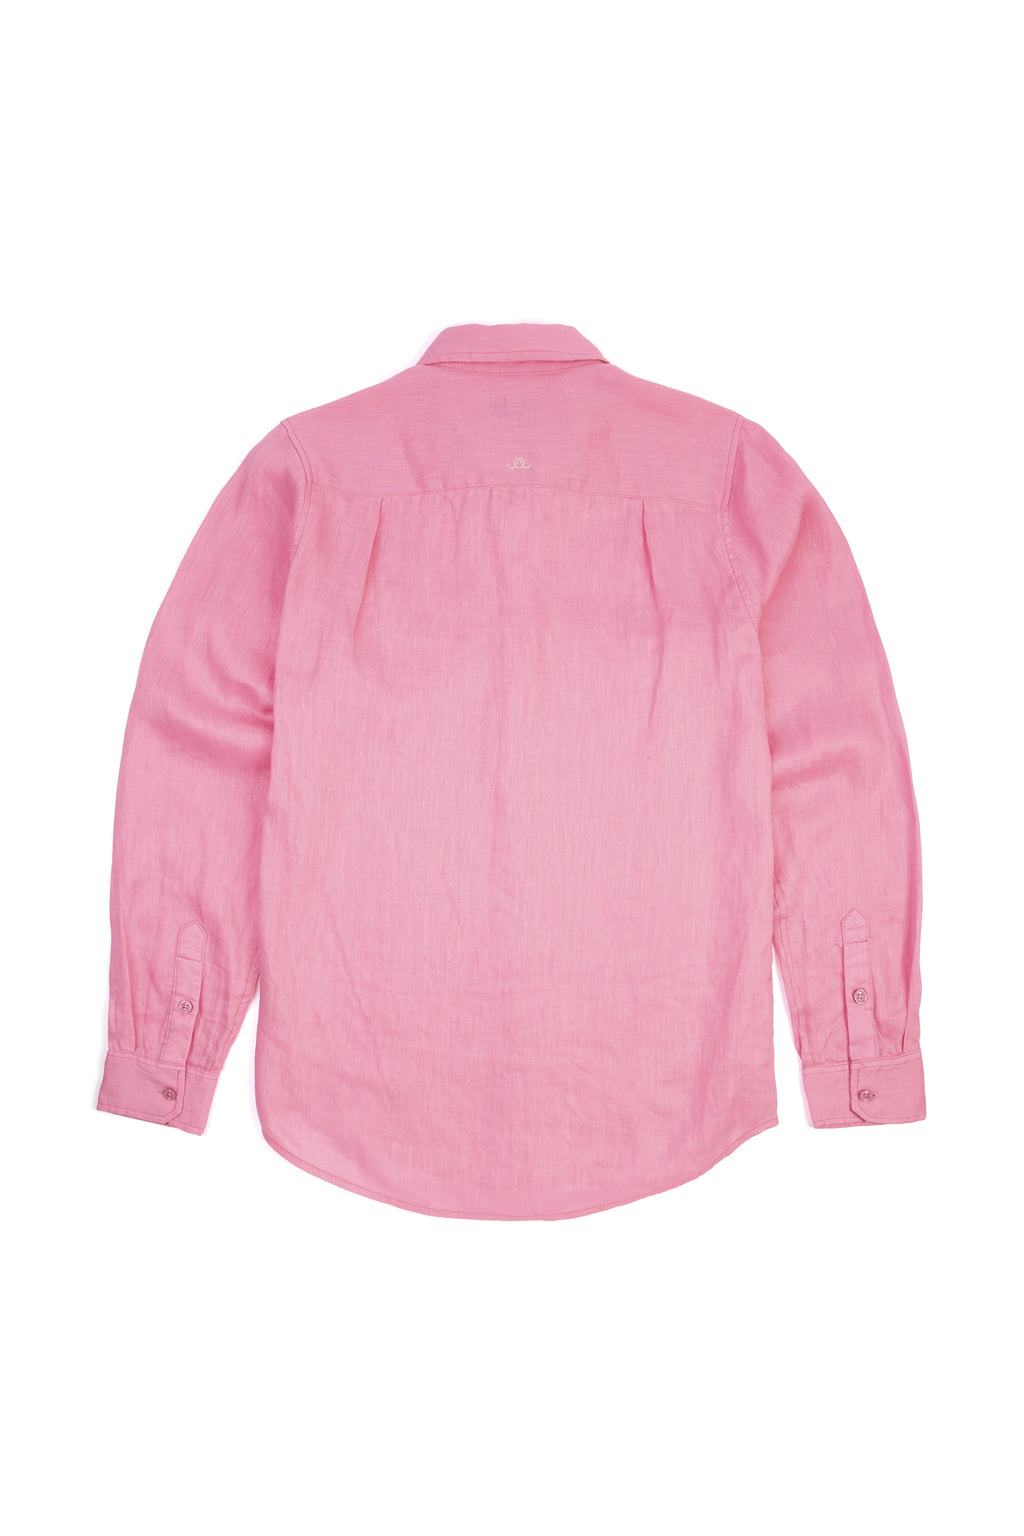 Summer Pink Linen Shirt NEW